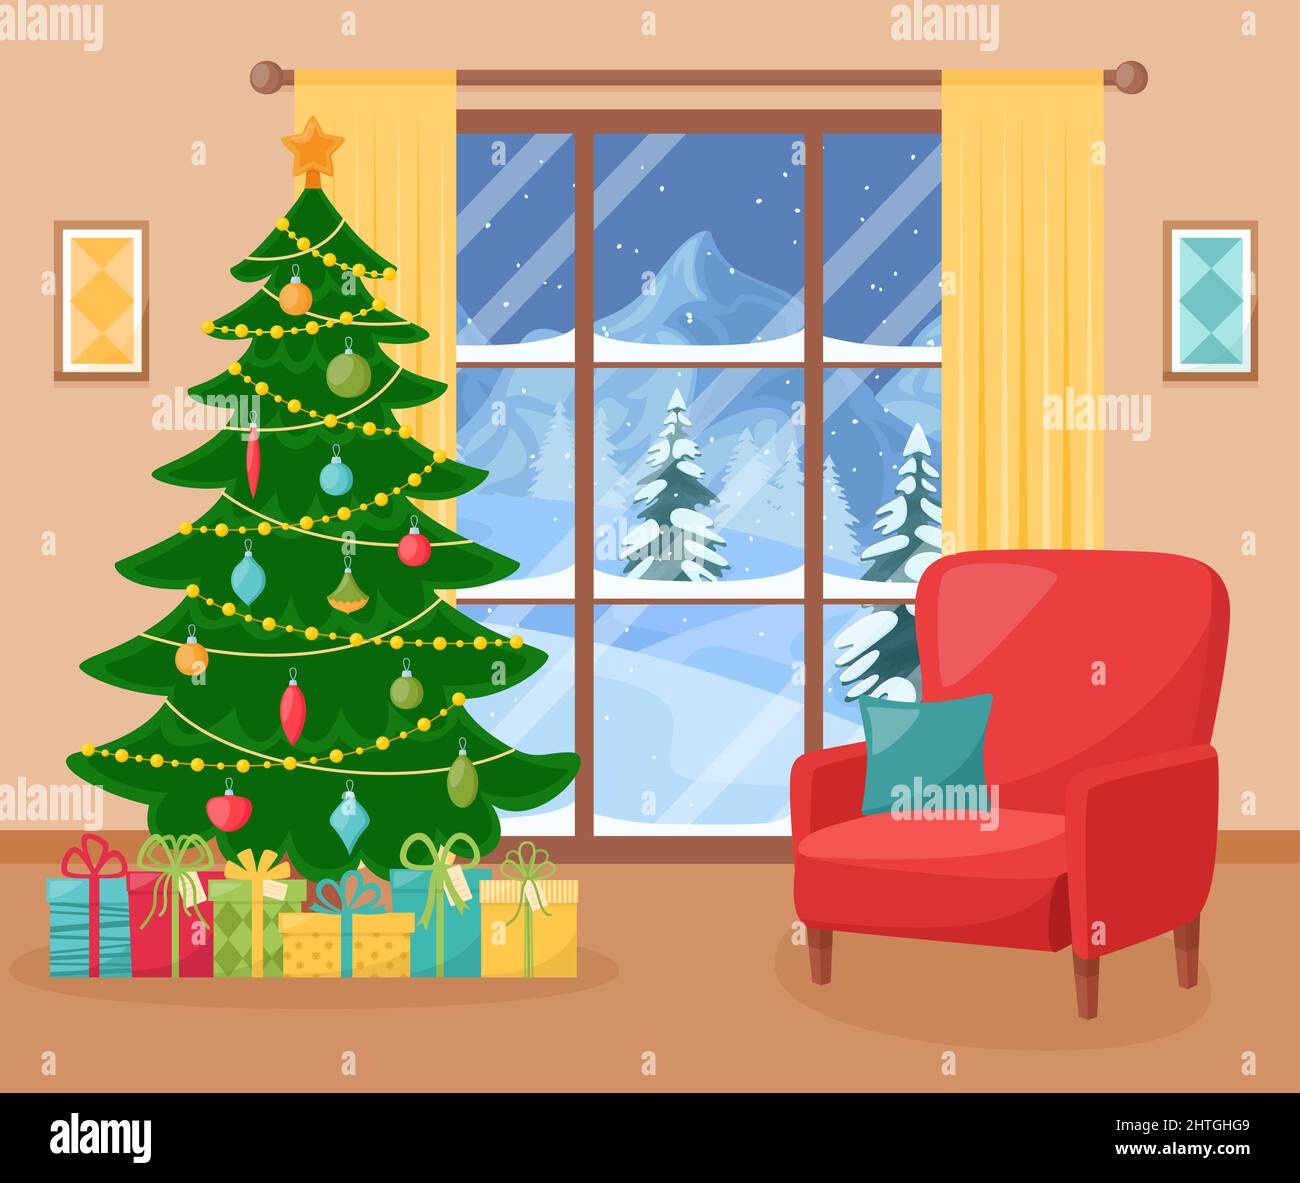 Gemütliches Wohninterieur mit Weihnachtsbaum und Sessel. Wohnzimmer mit Neujahrsdecorated. Vektorgrafik Stock Vektor